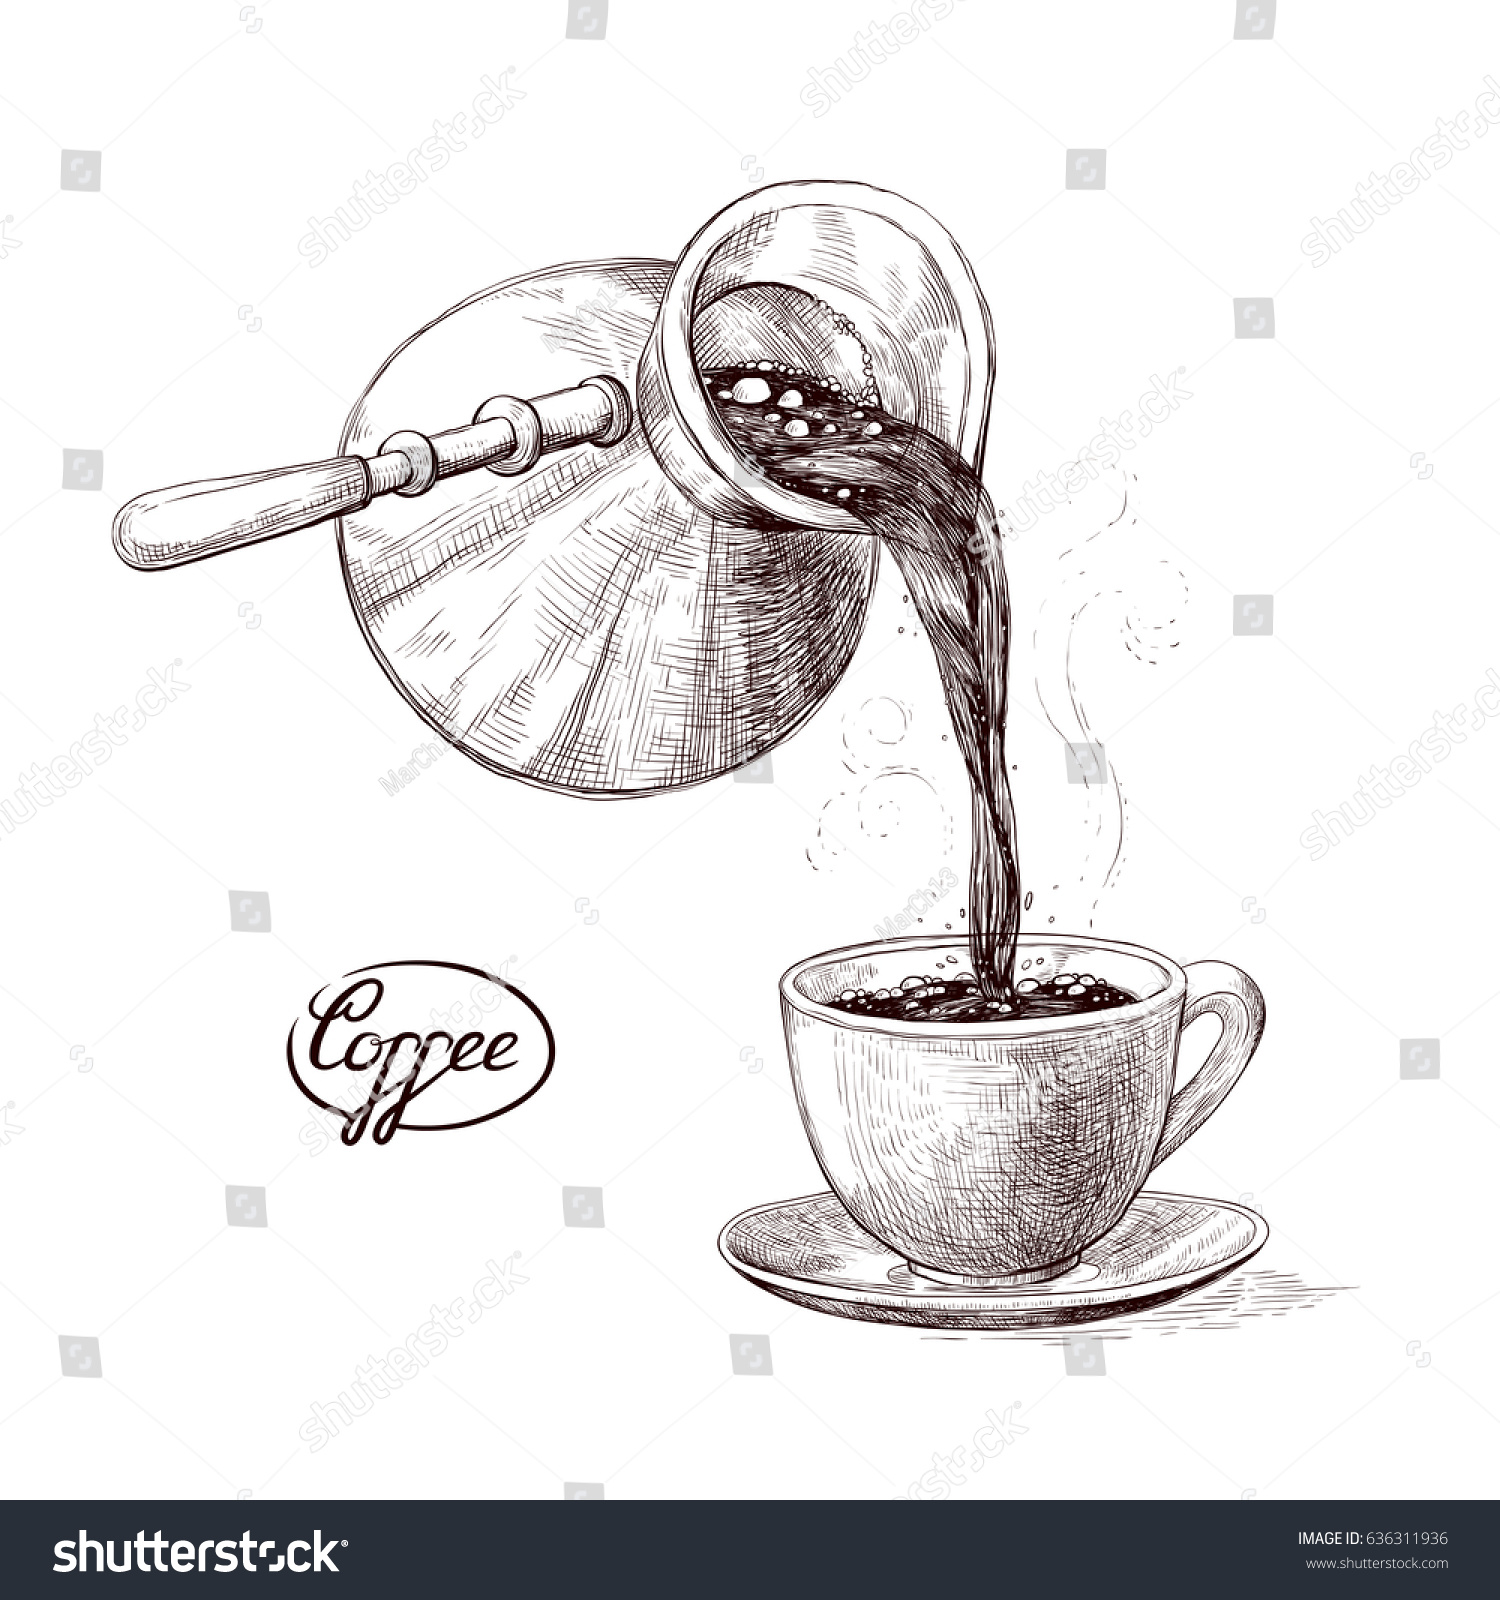 Скетч рисунок кофе в турке